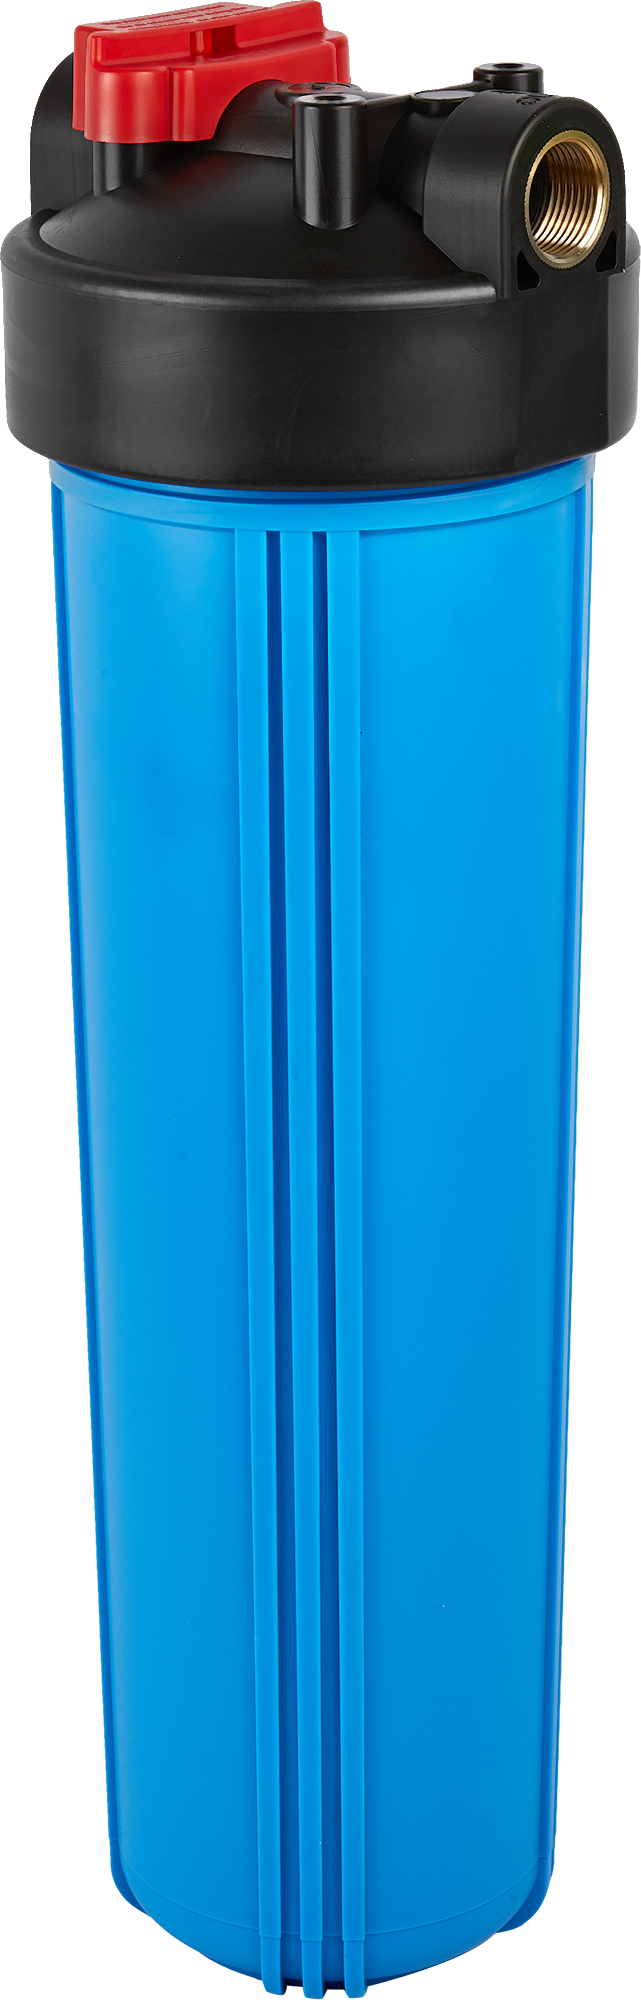 Магистральный фильтр для холодного водоснабжения (ХВС) Unicorn FHBB 20 .